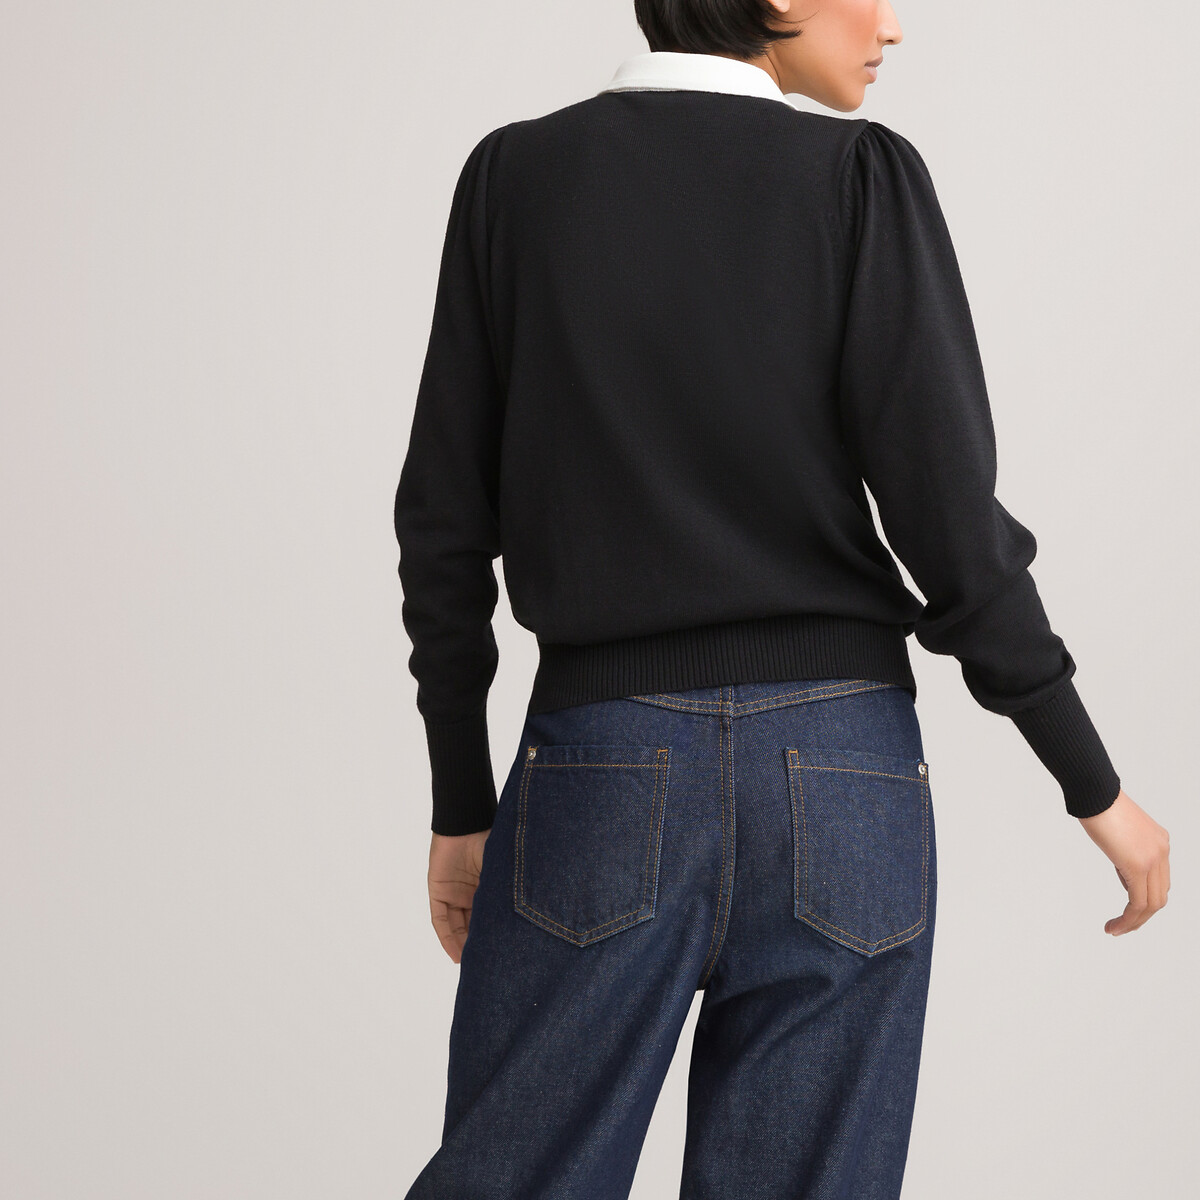 Пуловер LaRedoute С воротником-поло двухцветный декоративные пуговицы M черный, размер M - фото 4